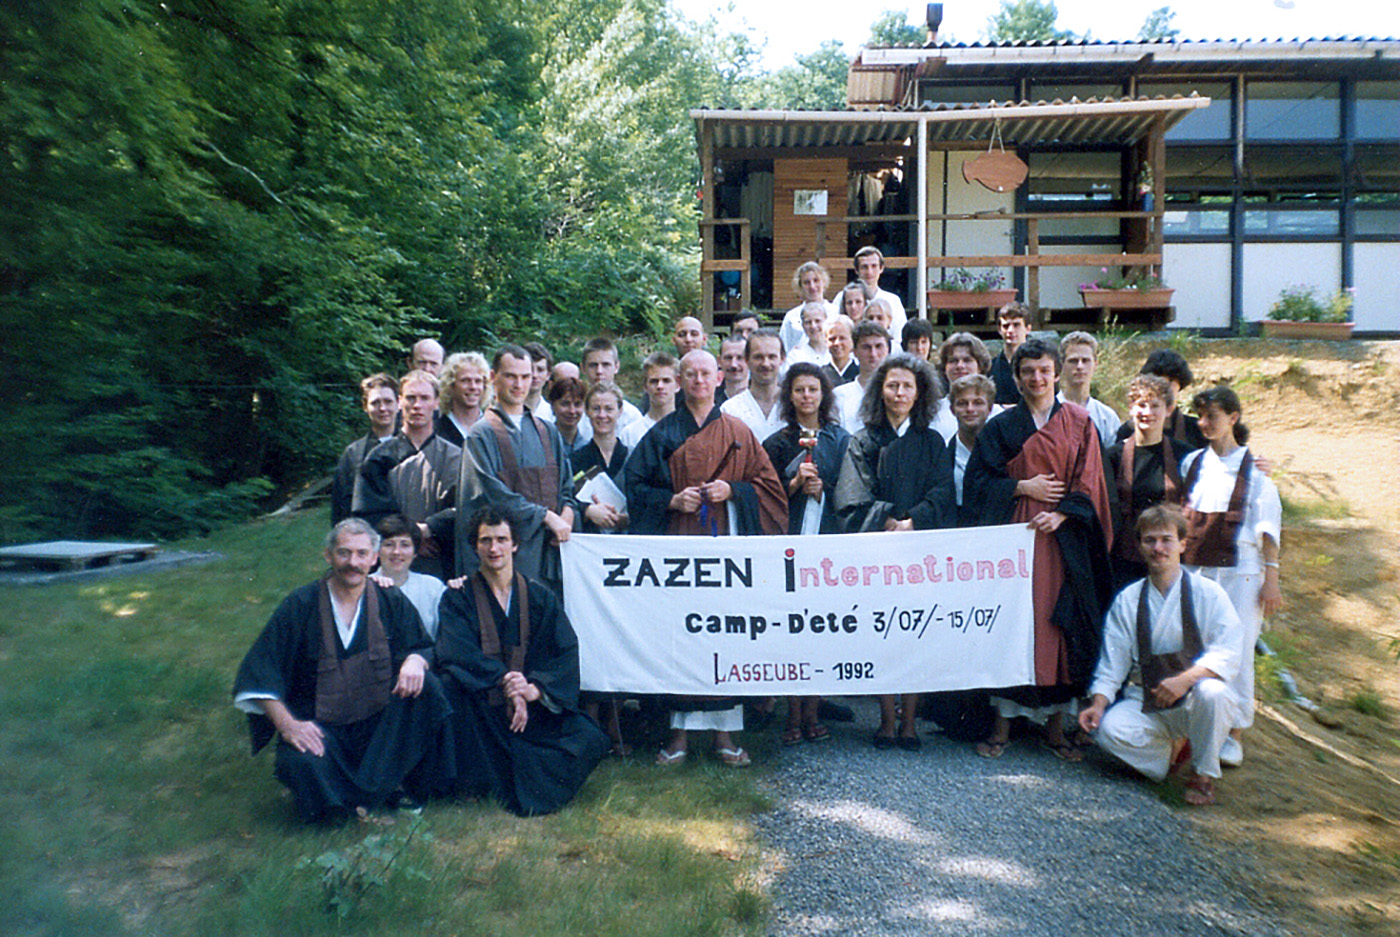 Absolvovanie prvého zahraničného sesshinu vo Francúzsku v Lasseube roku 1992 s majstrom Kaisenom